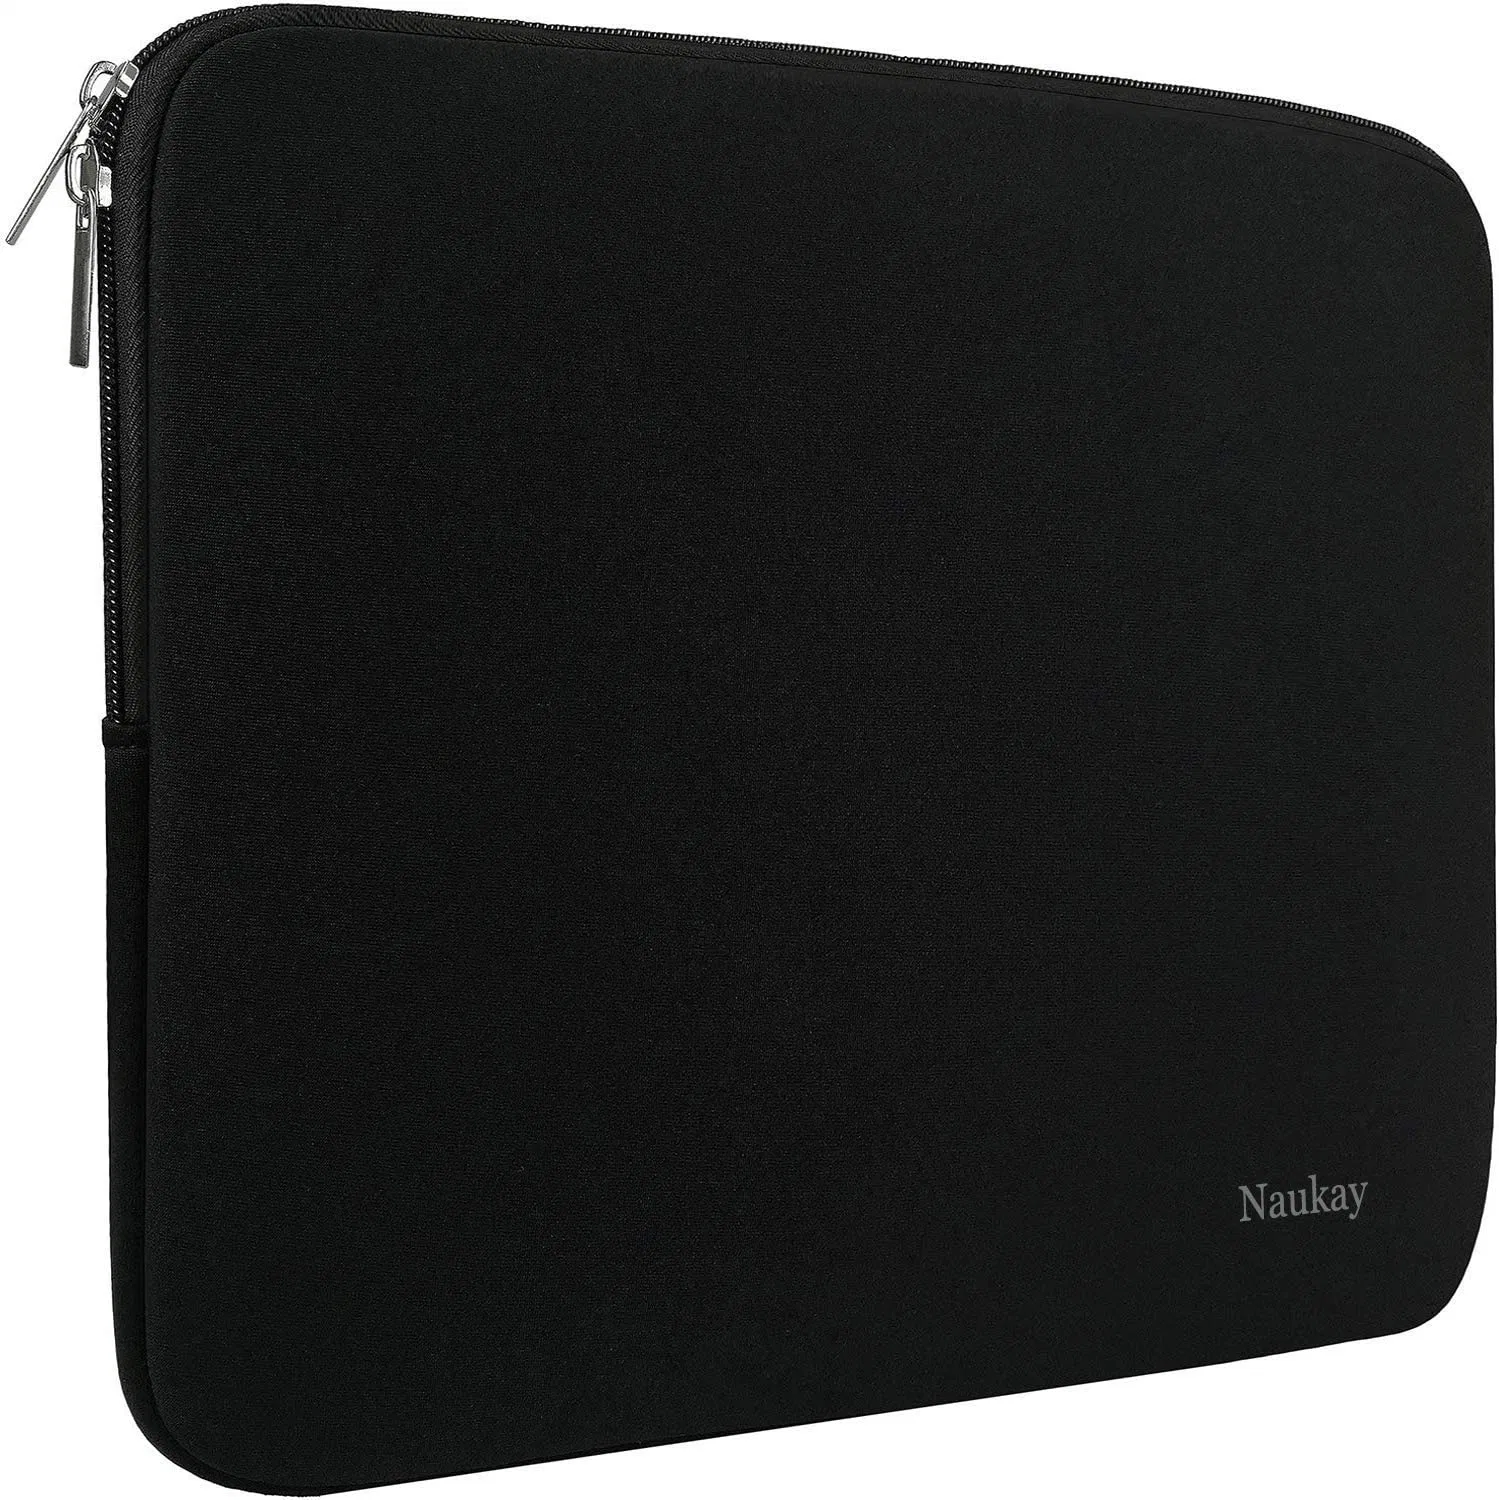 Notebook-Schutztasche Aus Neopren Für Laptop-Computer